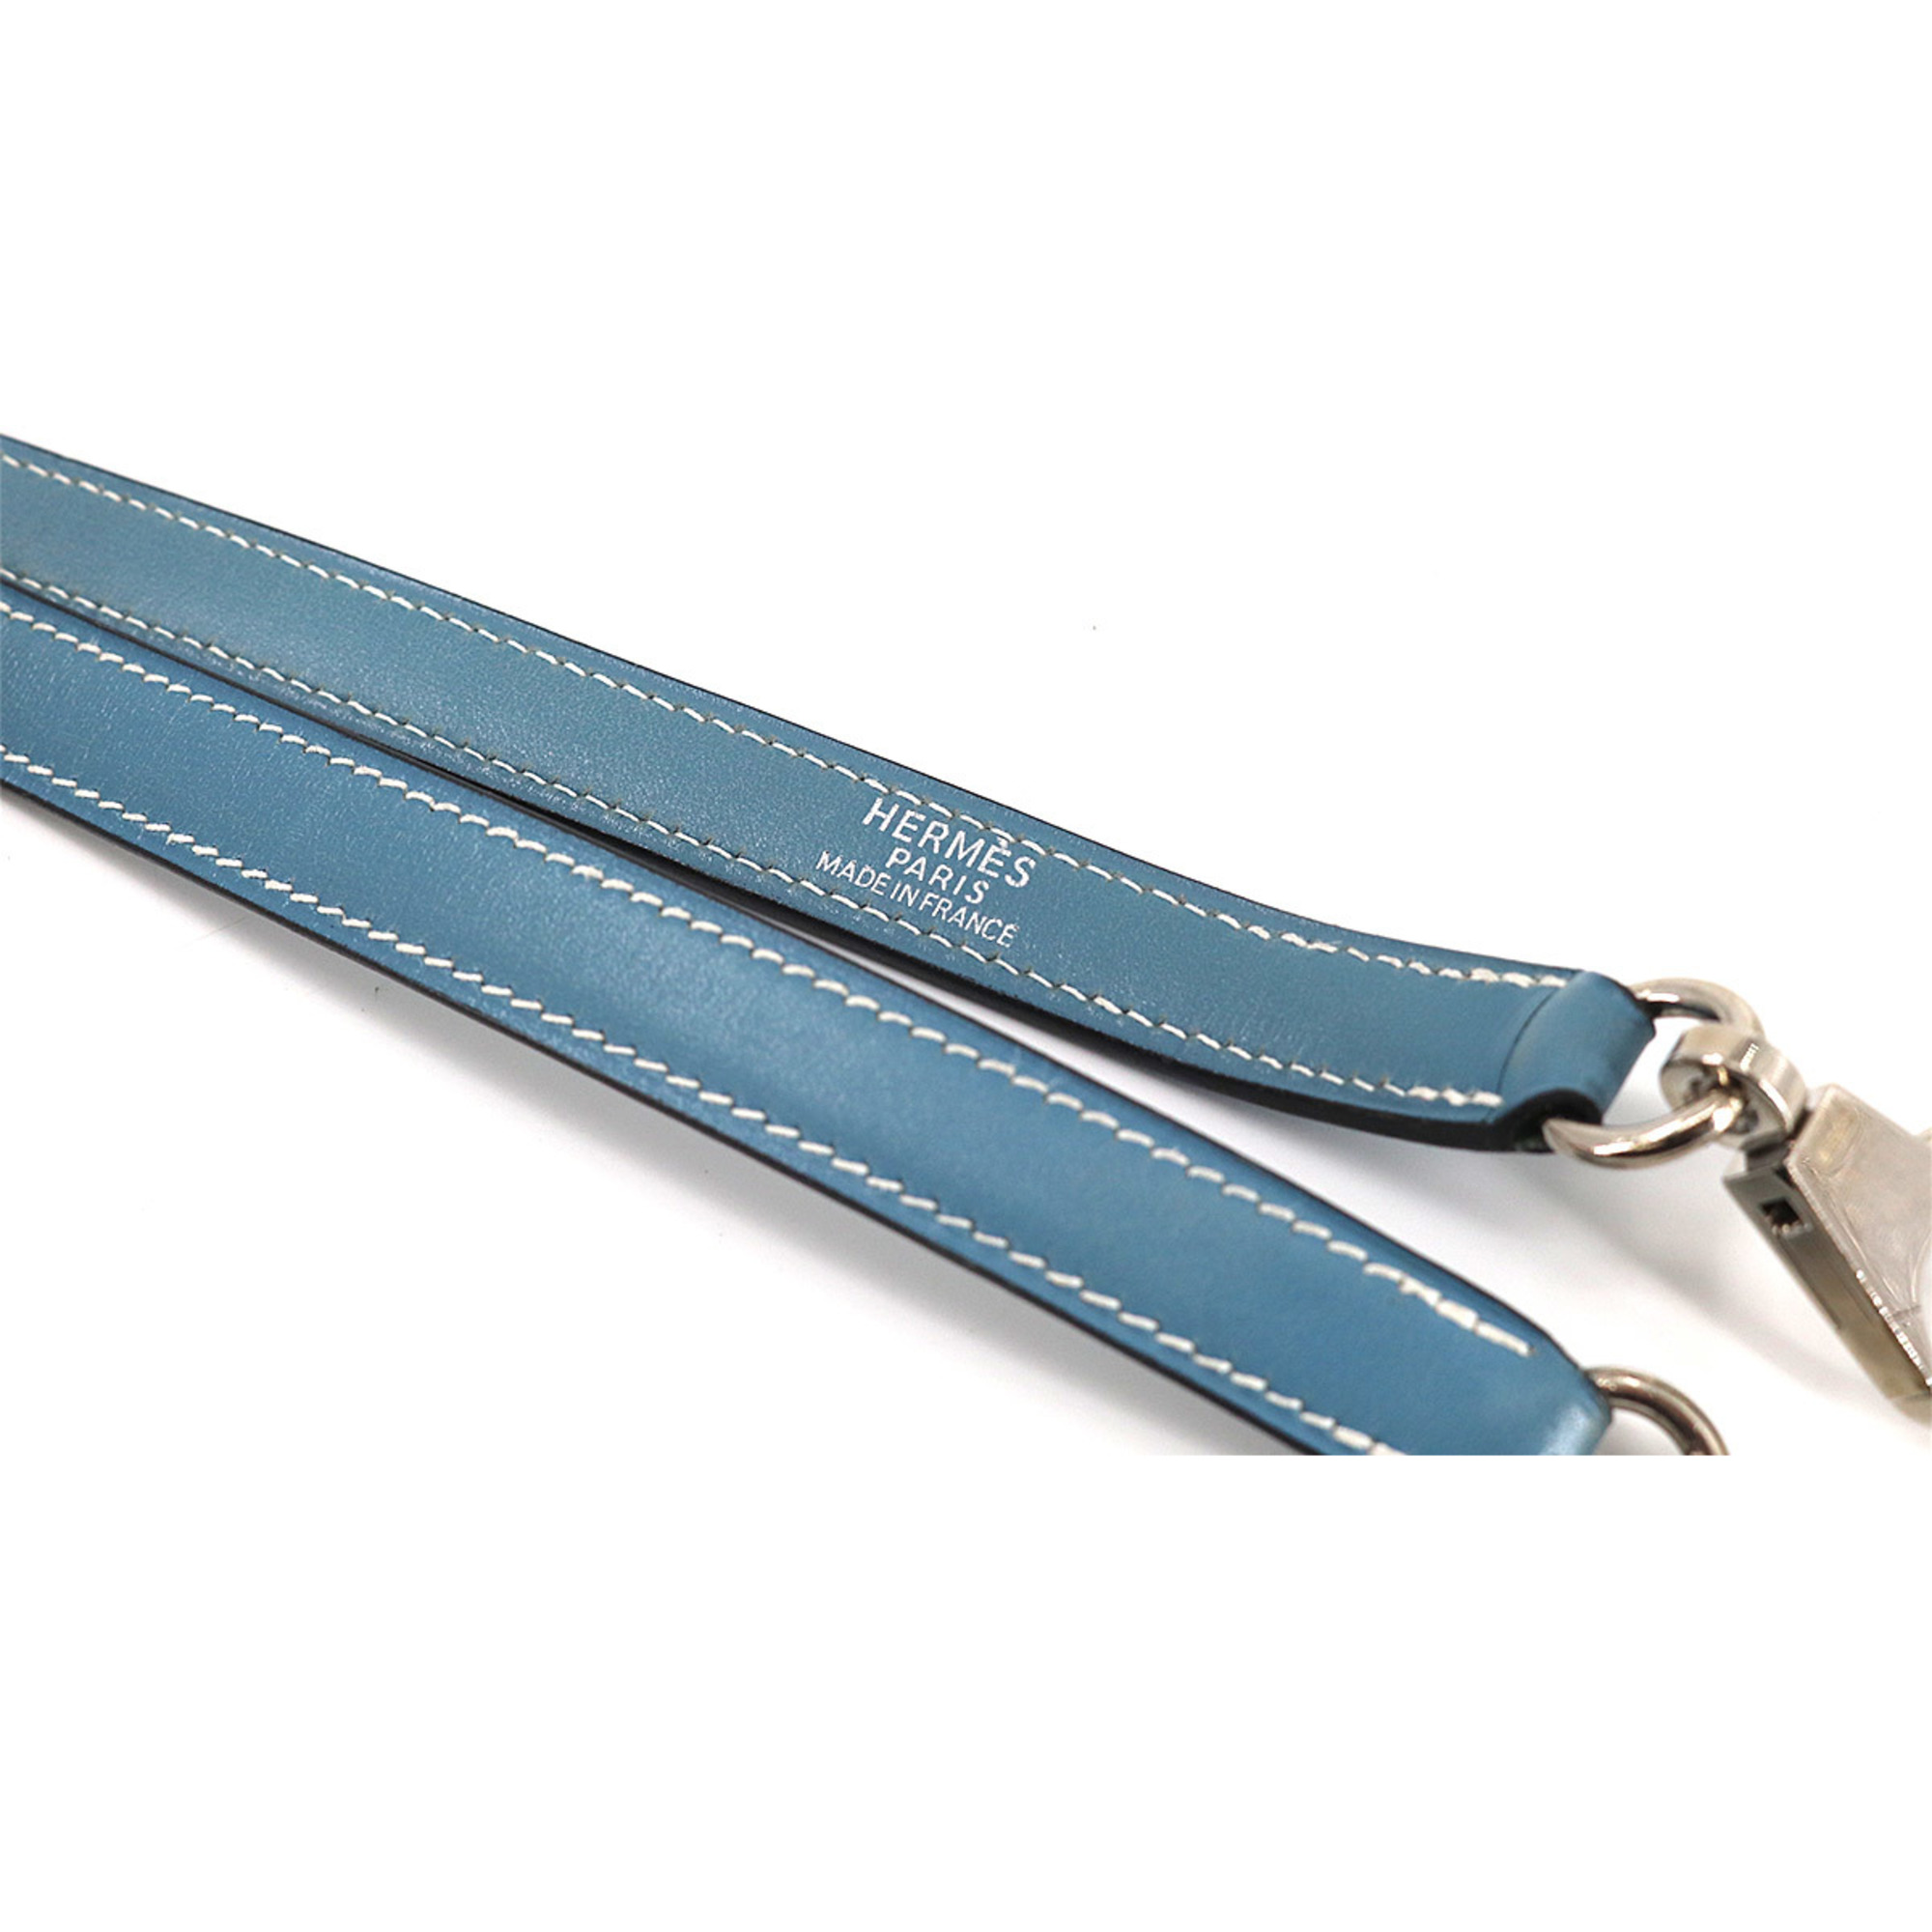 Hermes HERMES Kelly Bolide Shoulder Strap Vogue River Leather Blue Jean Silver Hardware strap